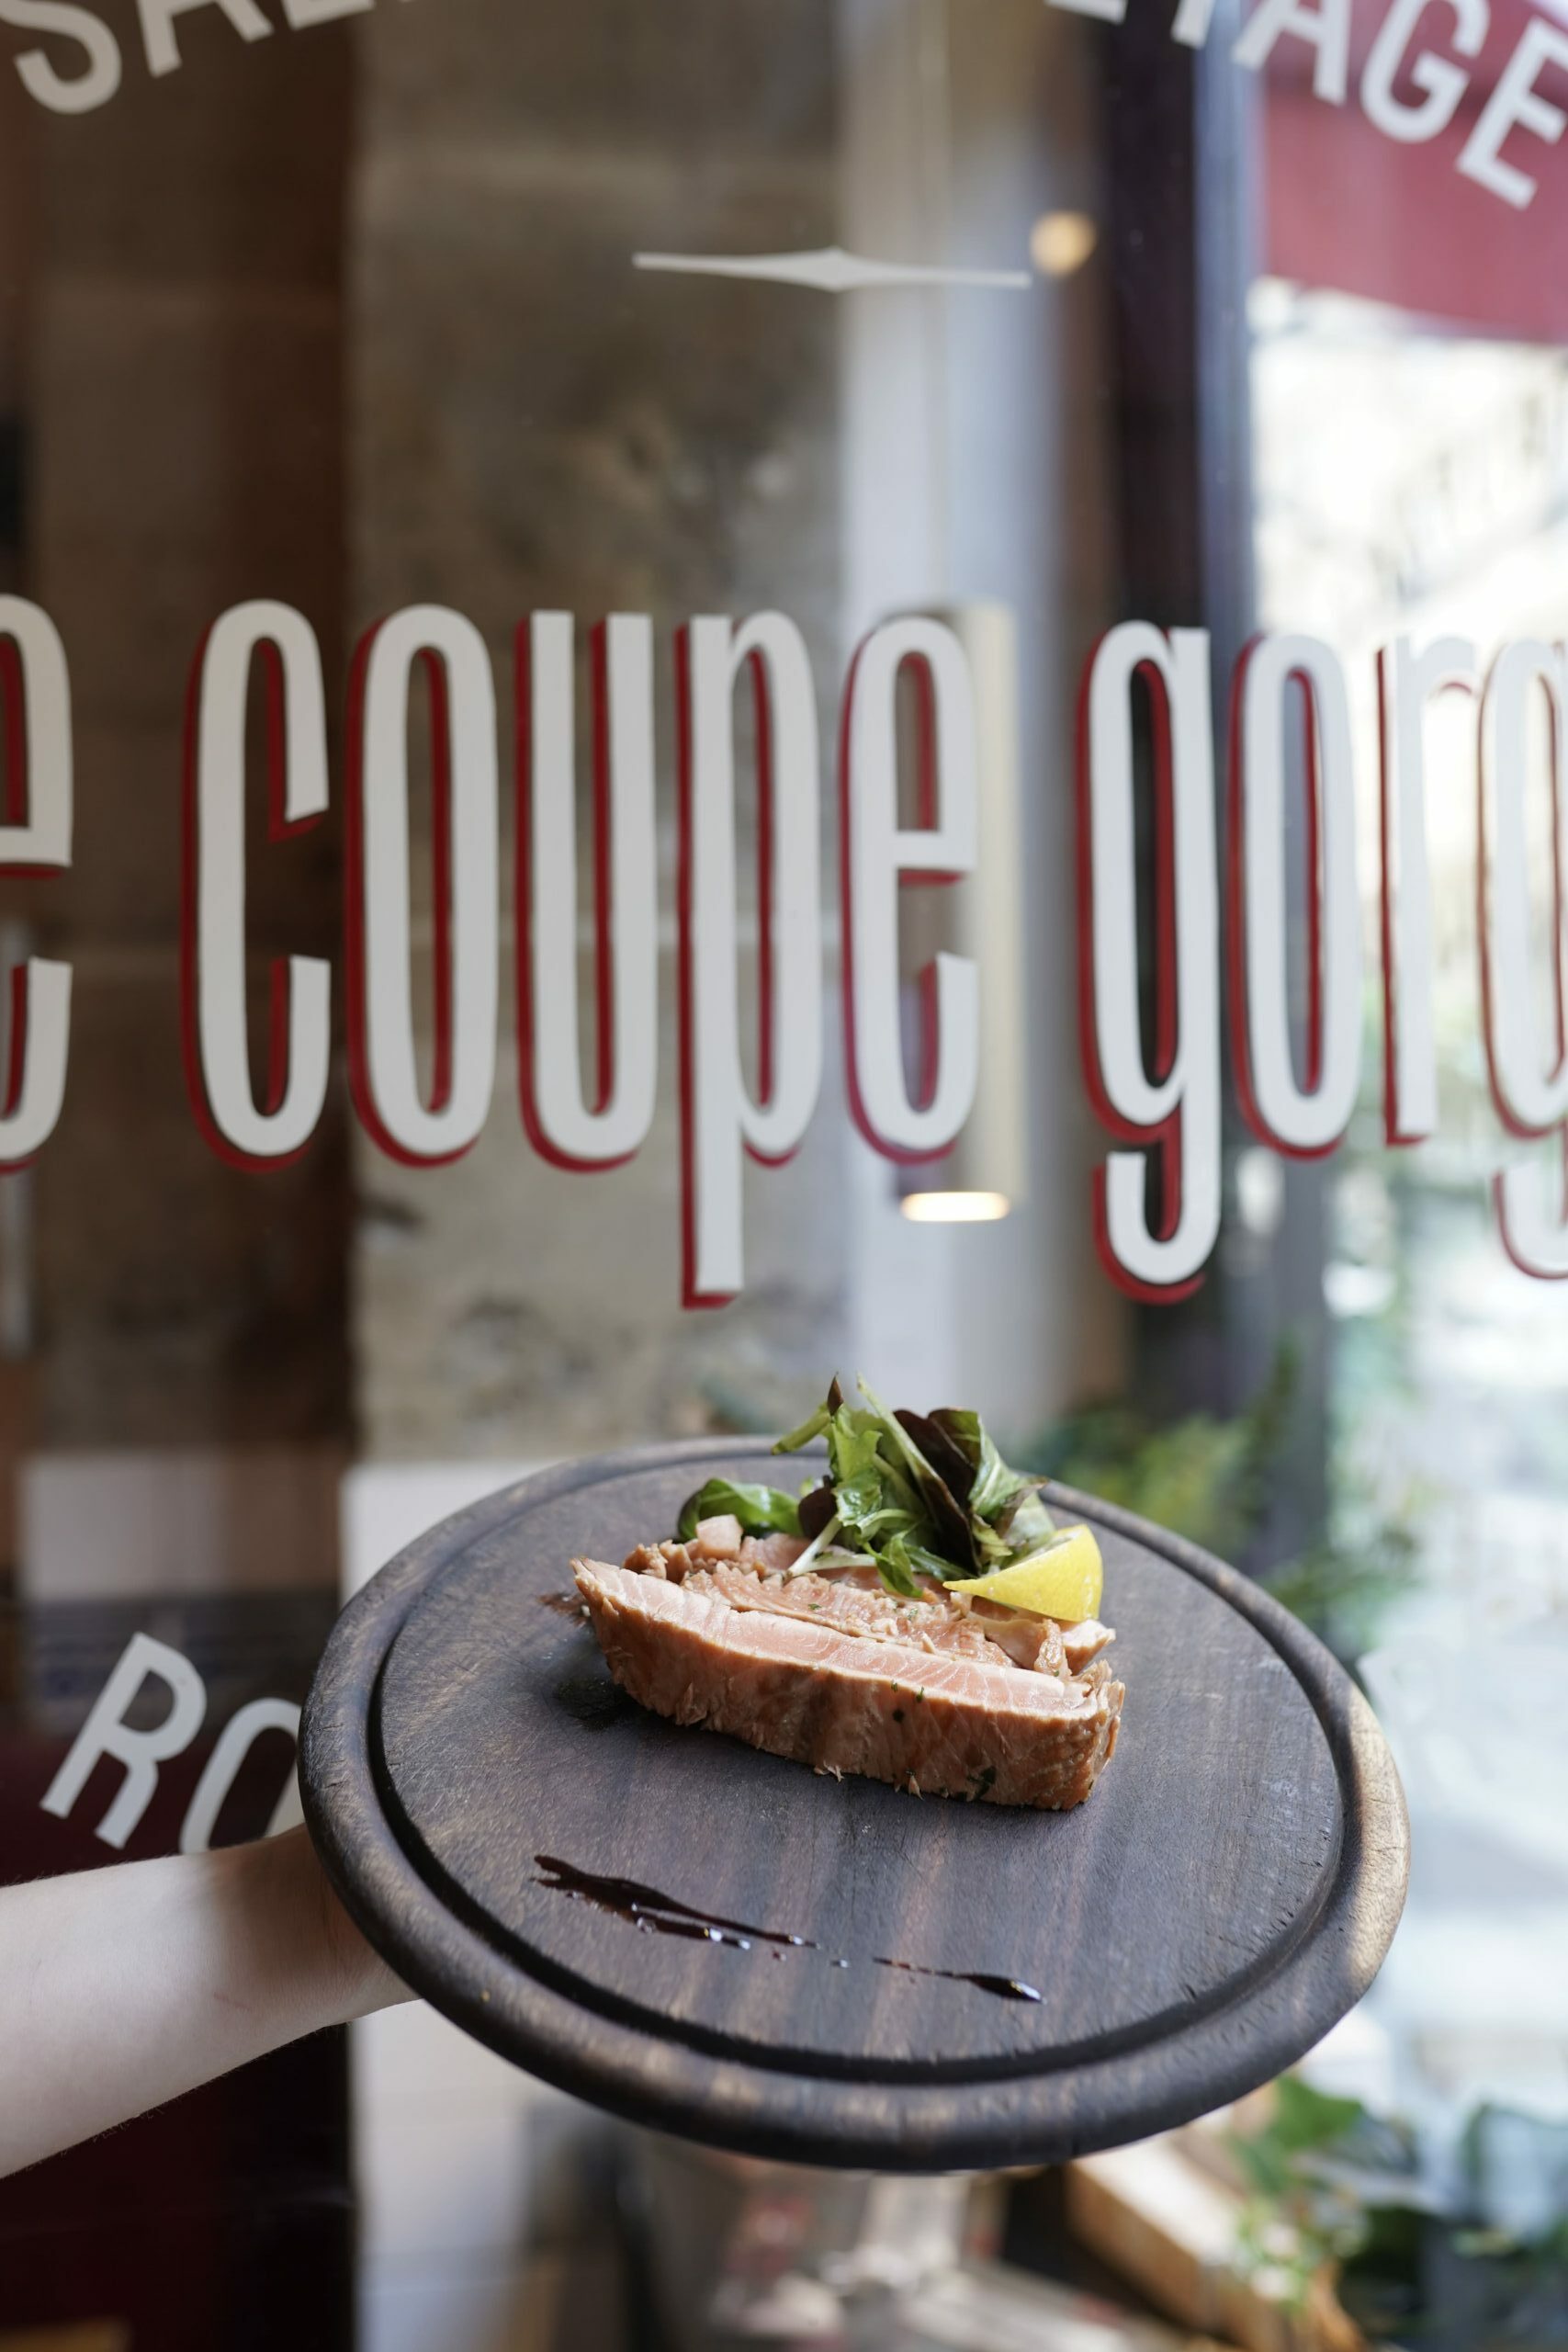 Le coupe gorge - Restaurant Paris - 73